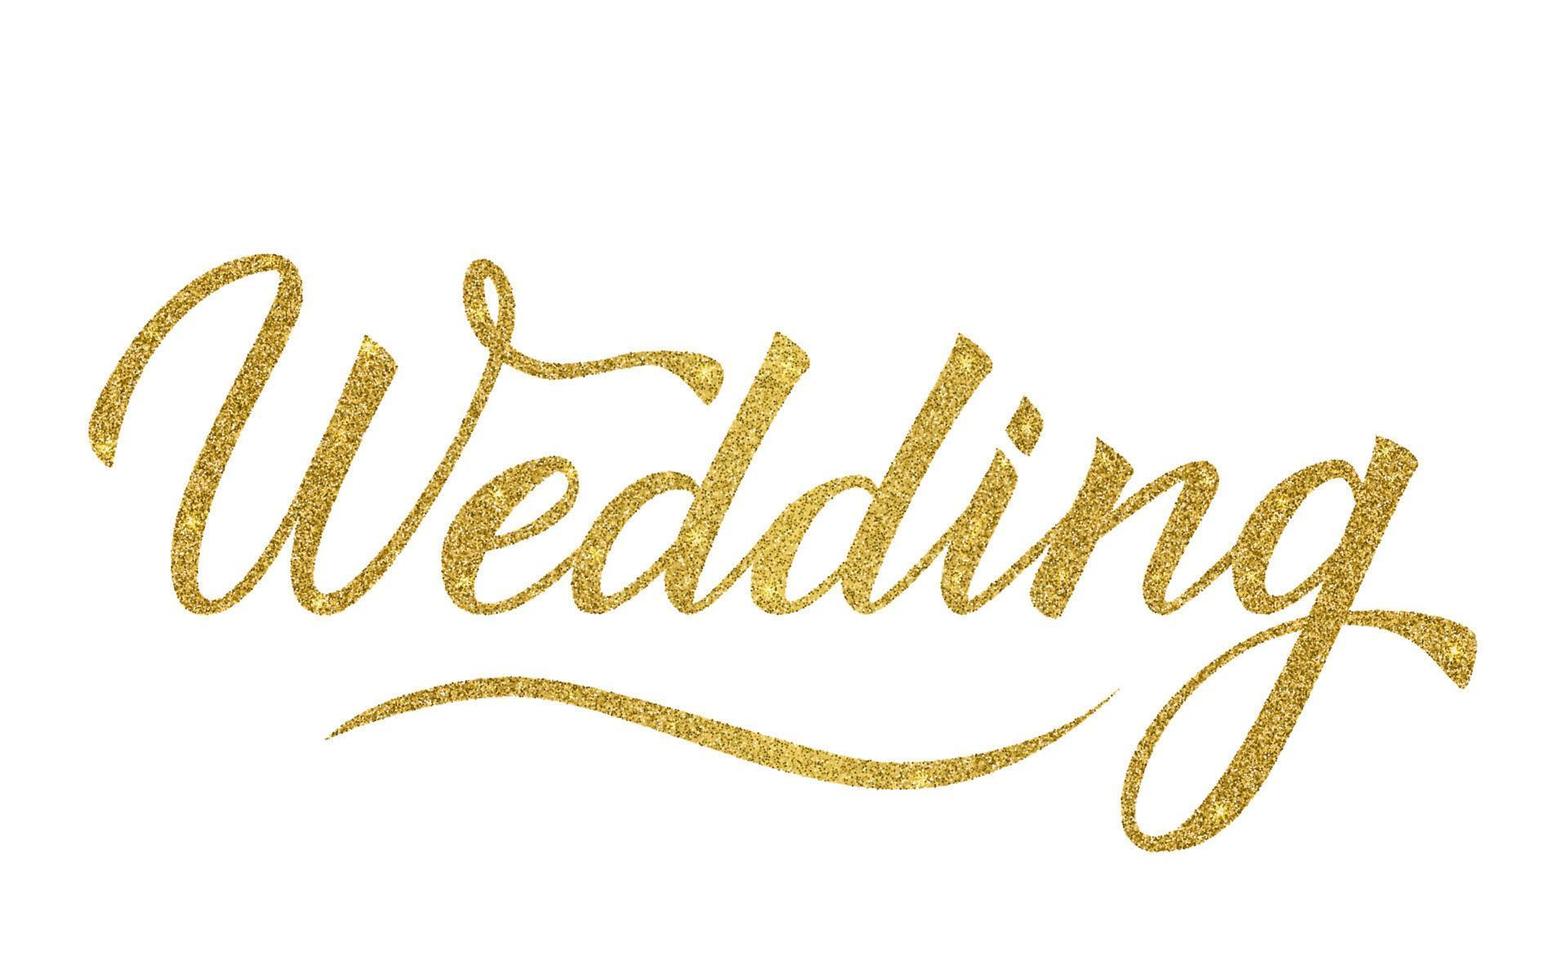 brilho ouro glitter escrevendo casamento isolado no branco. escrito à mão com letras de caligrafia de pincel. modelo de vetor fácil de editar